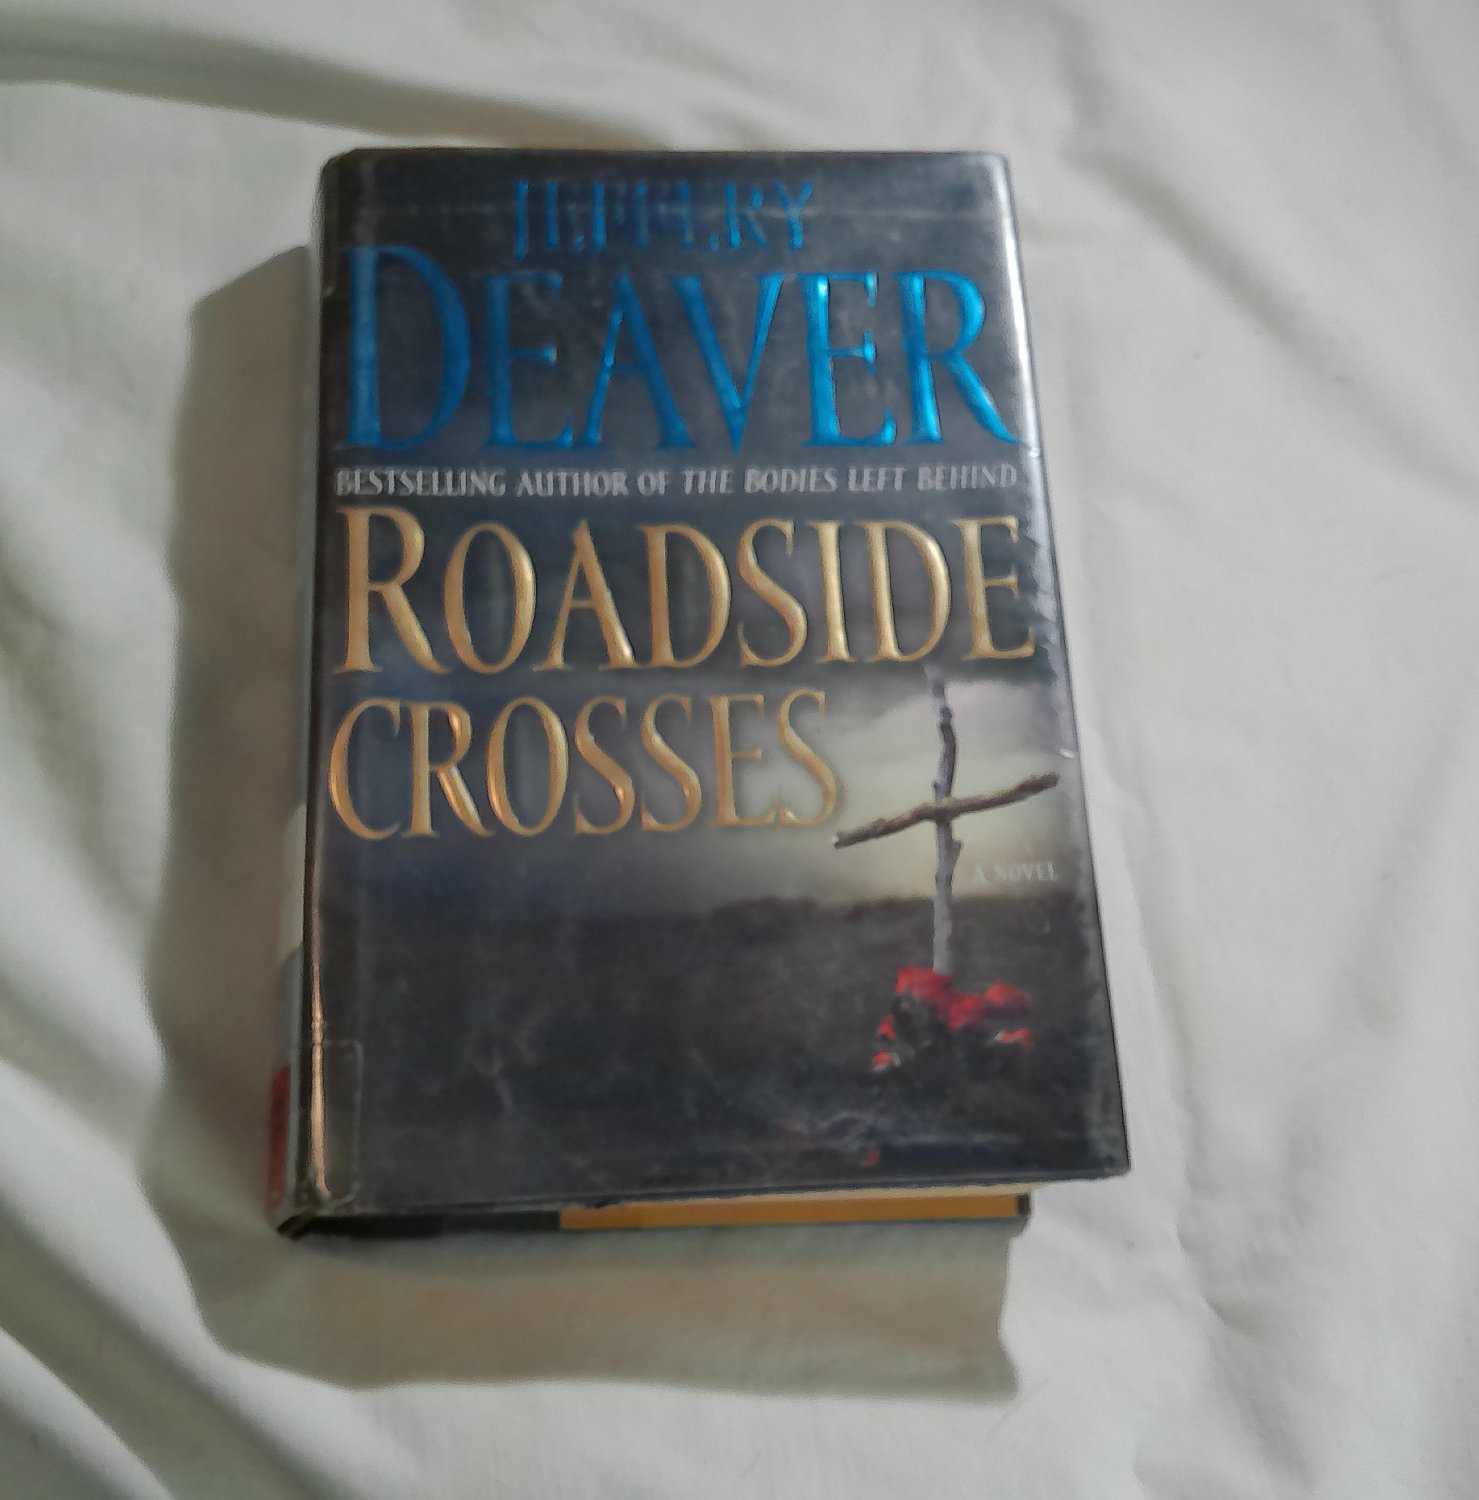 Roadside Crosses by Jeffery Deaver (2009) (191) Kathryn Dance #2, Mystery, Thriller